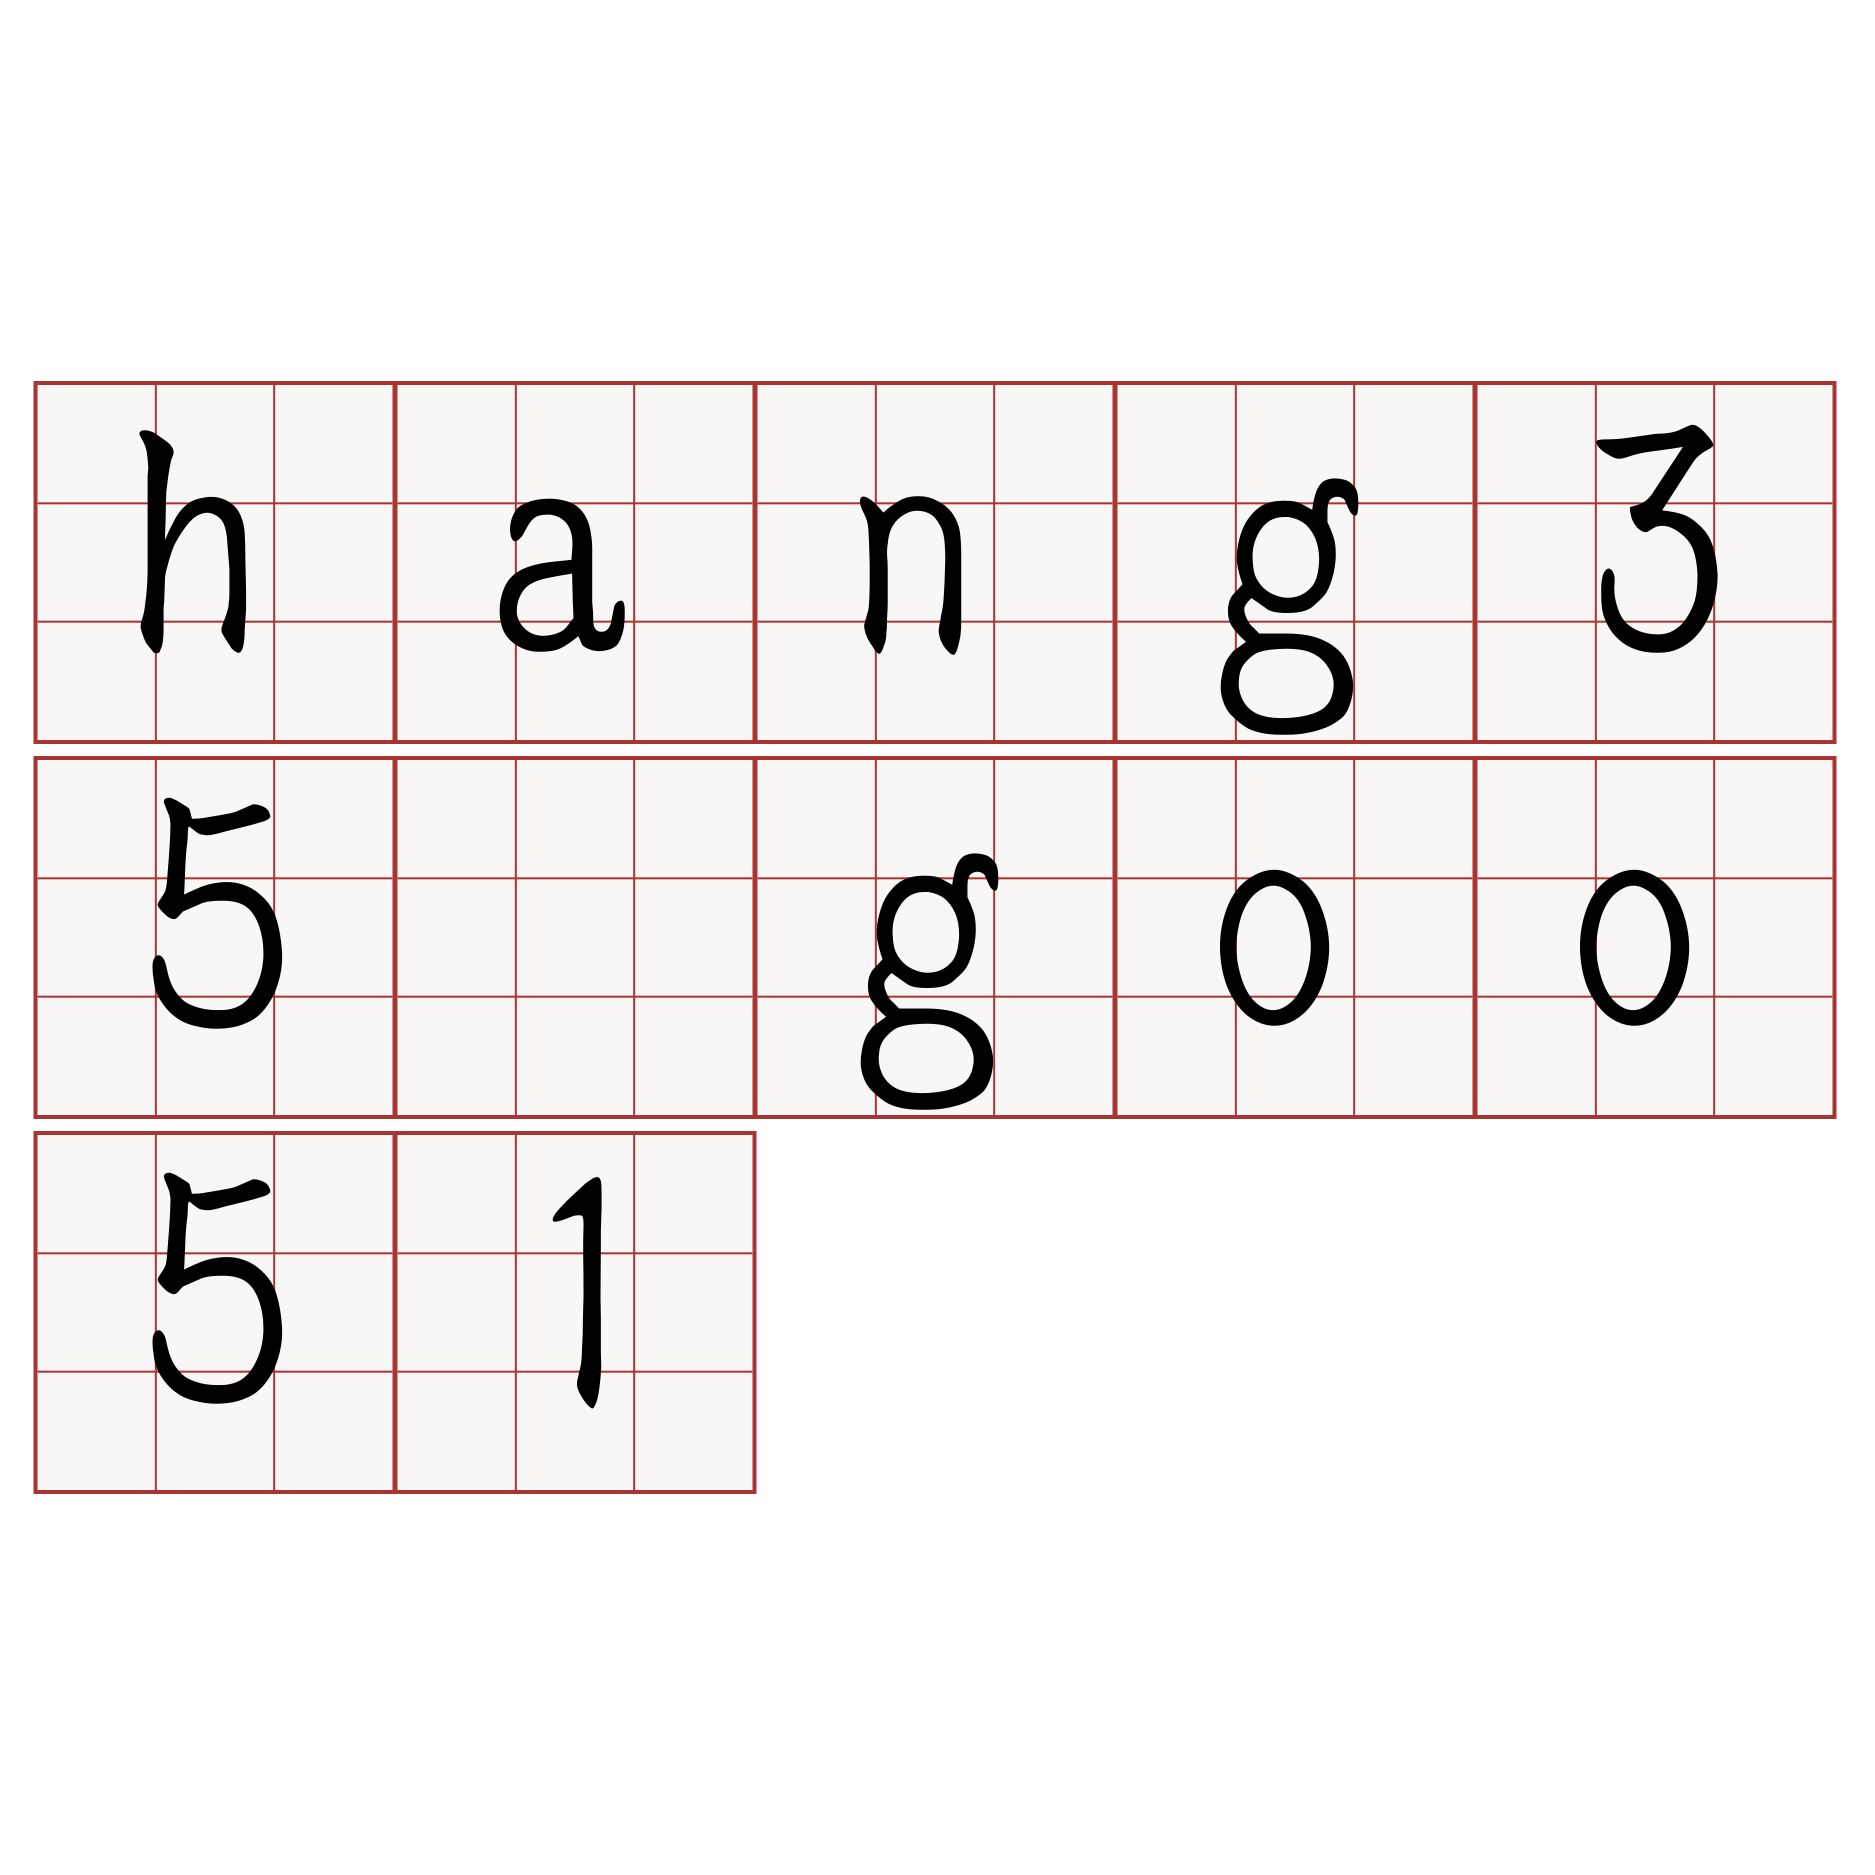 hang35 goo51